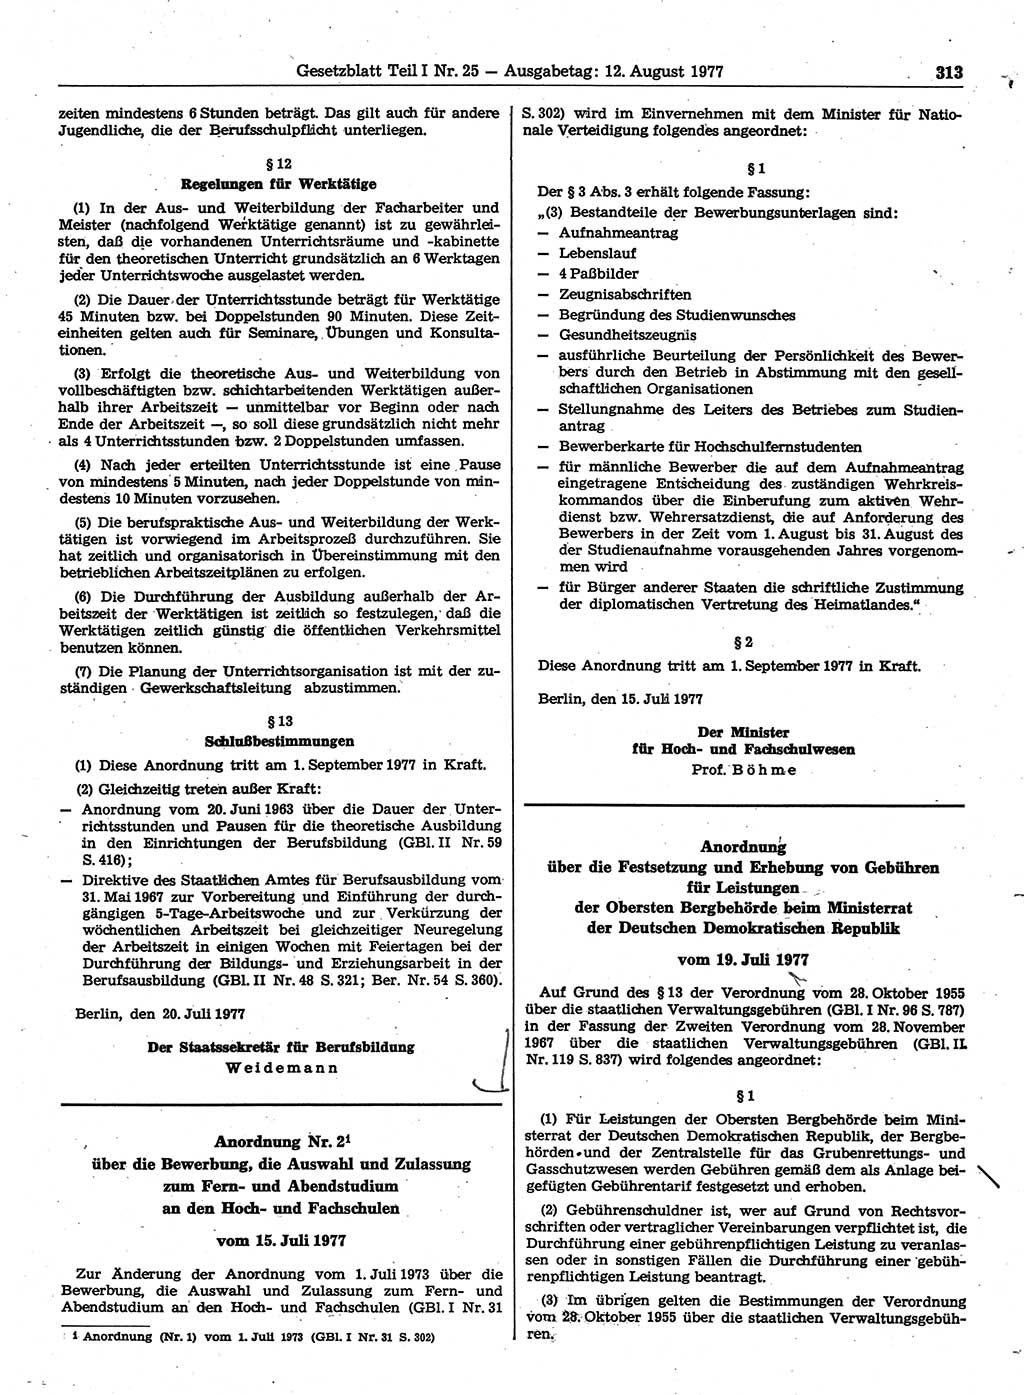 Gesetzblatt (GBl.) der Deutschen Demokratischen Republik (DDR) Teil Ⅰ 1977, Seite 313 (GBl. DDR Ⅰ 1977, S. 313)